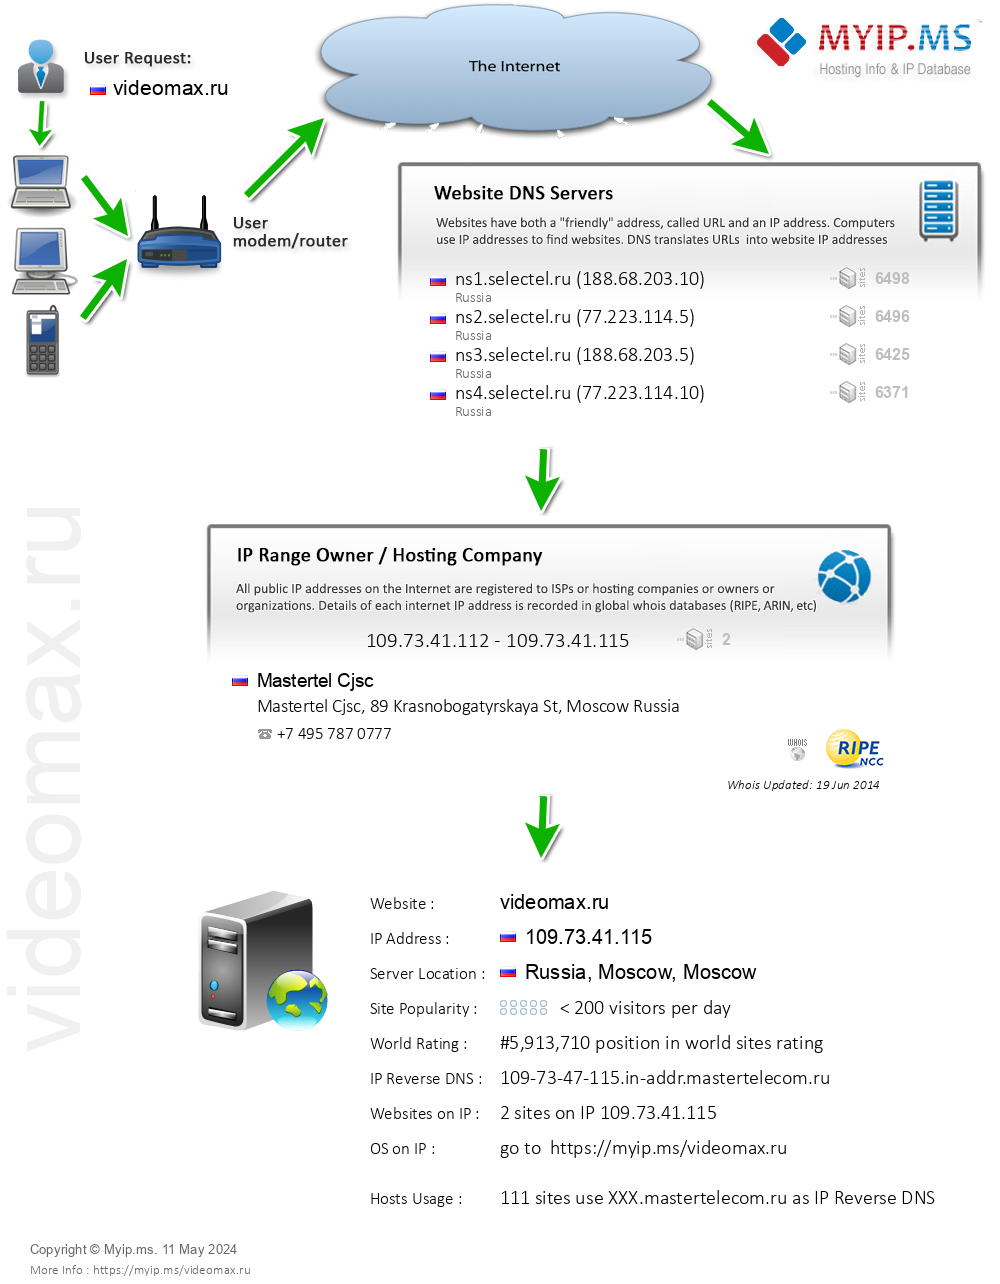 Videomax.ru - Website Hosting Visual IP Diagram